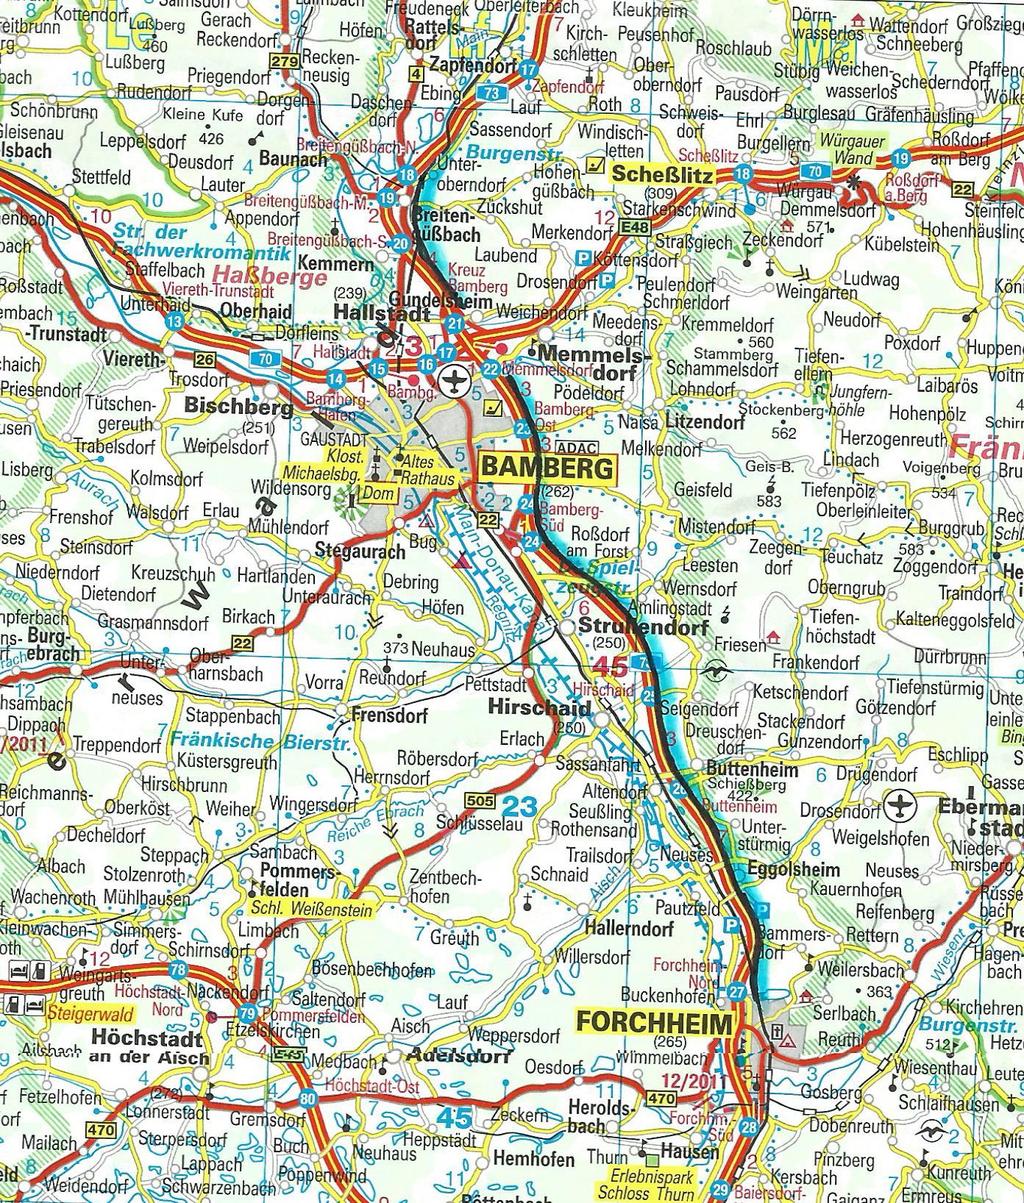 Güterumfahrung von Bamberg als A73-Parallele Länge ca.